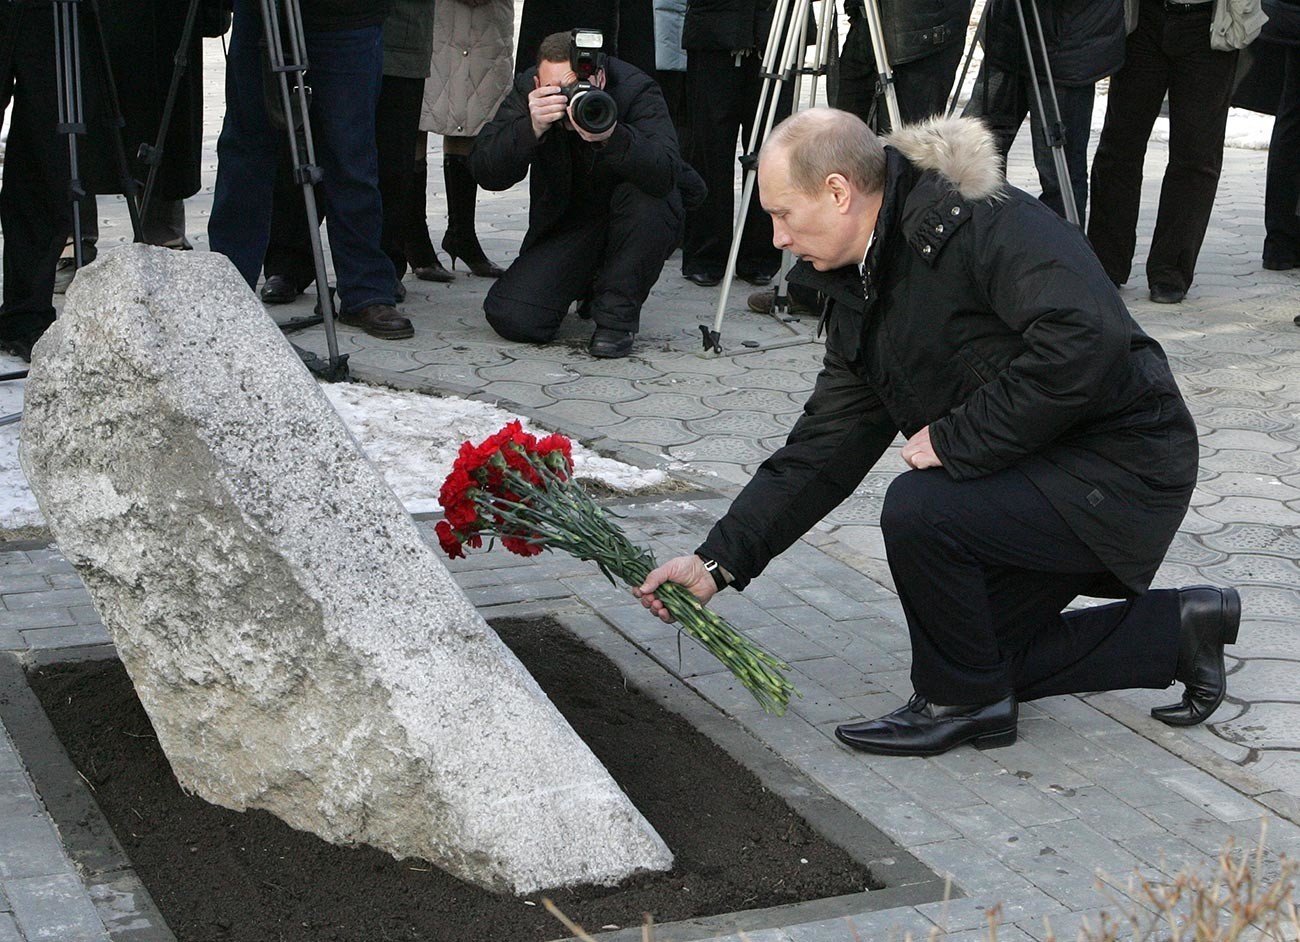 Ruski predsednik Vladimir Putin v spomin na žrtve streljanja v Novočerkasku leta 1962

